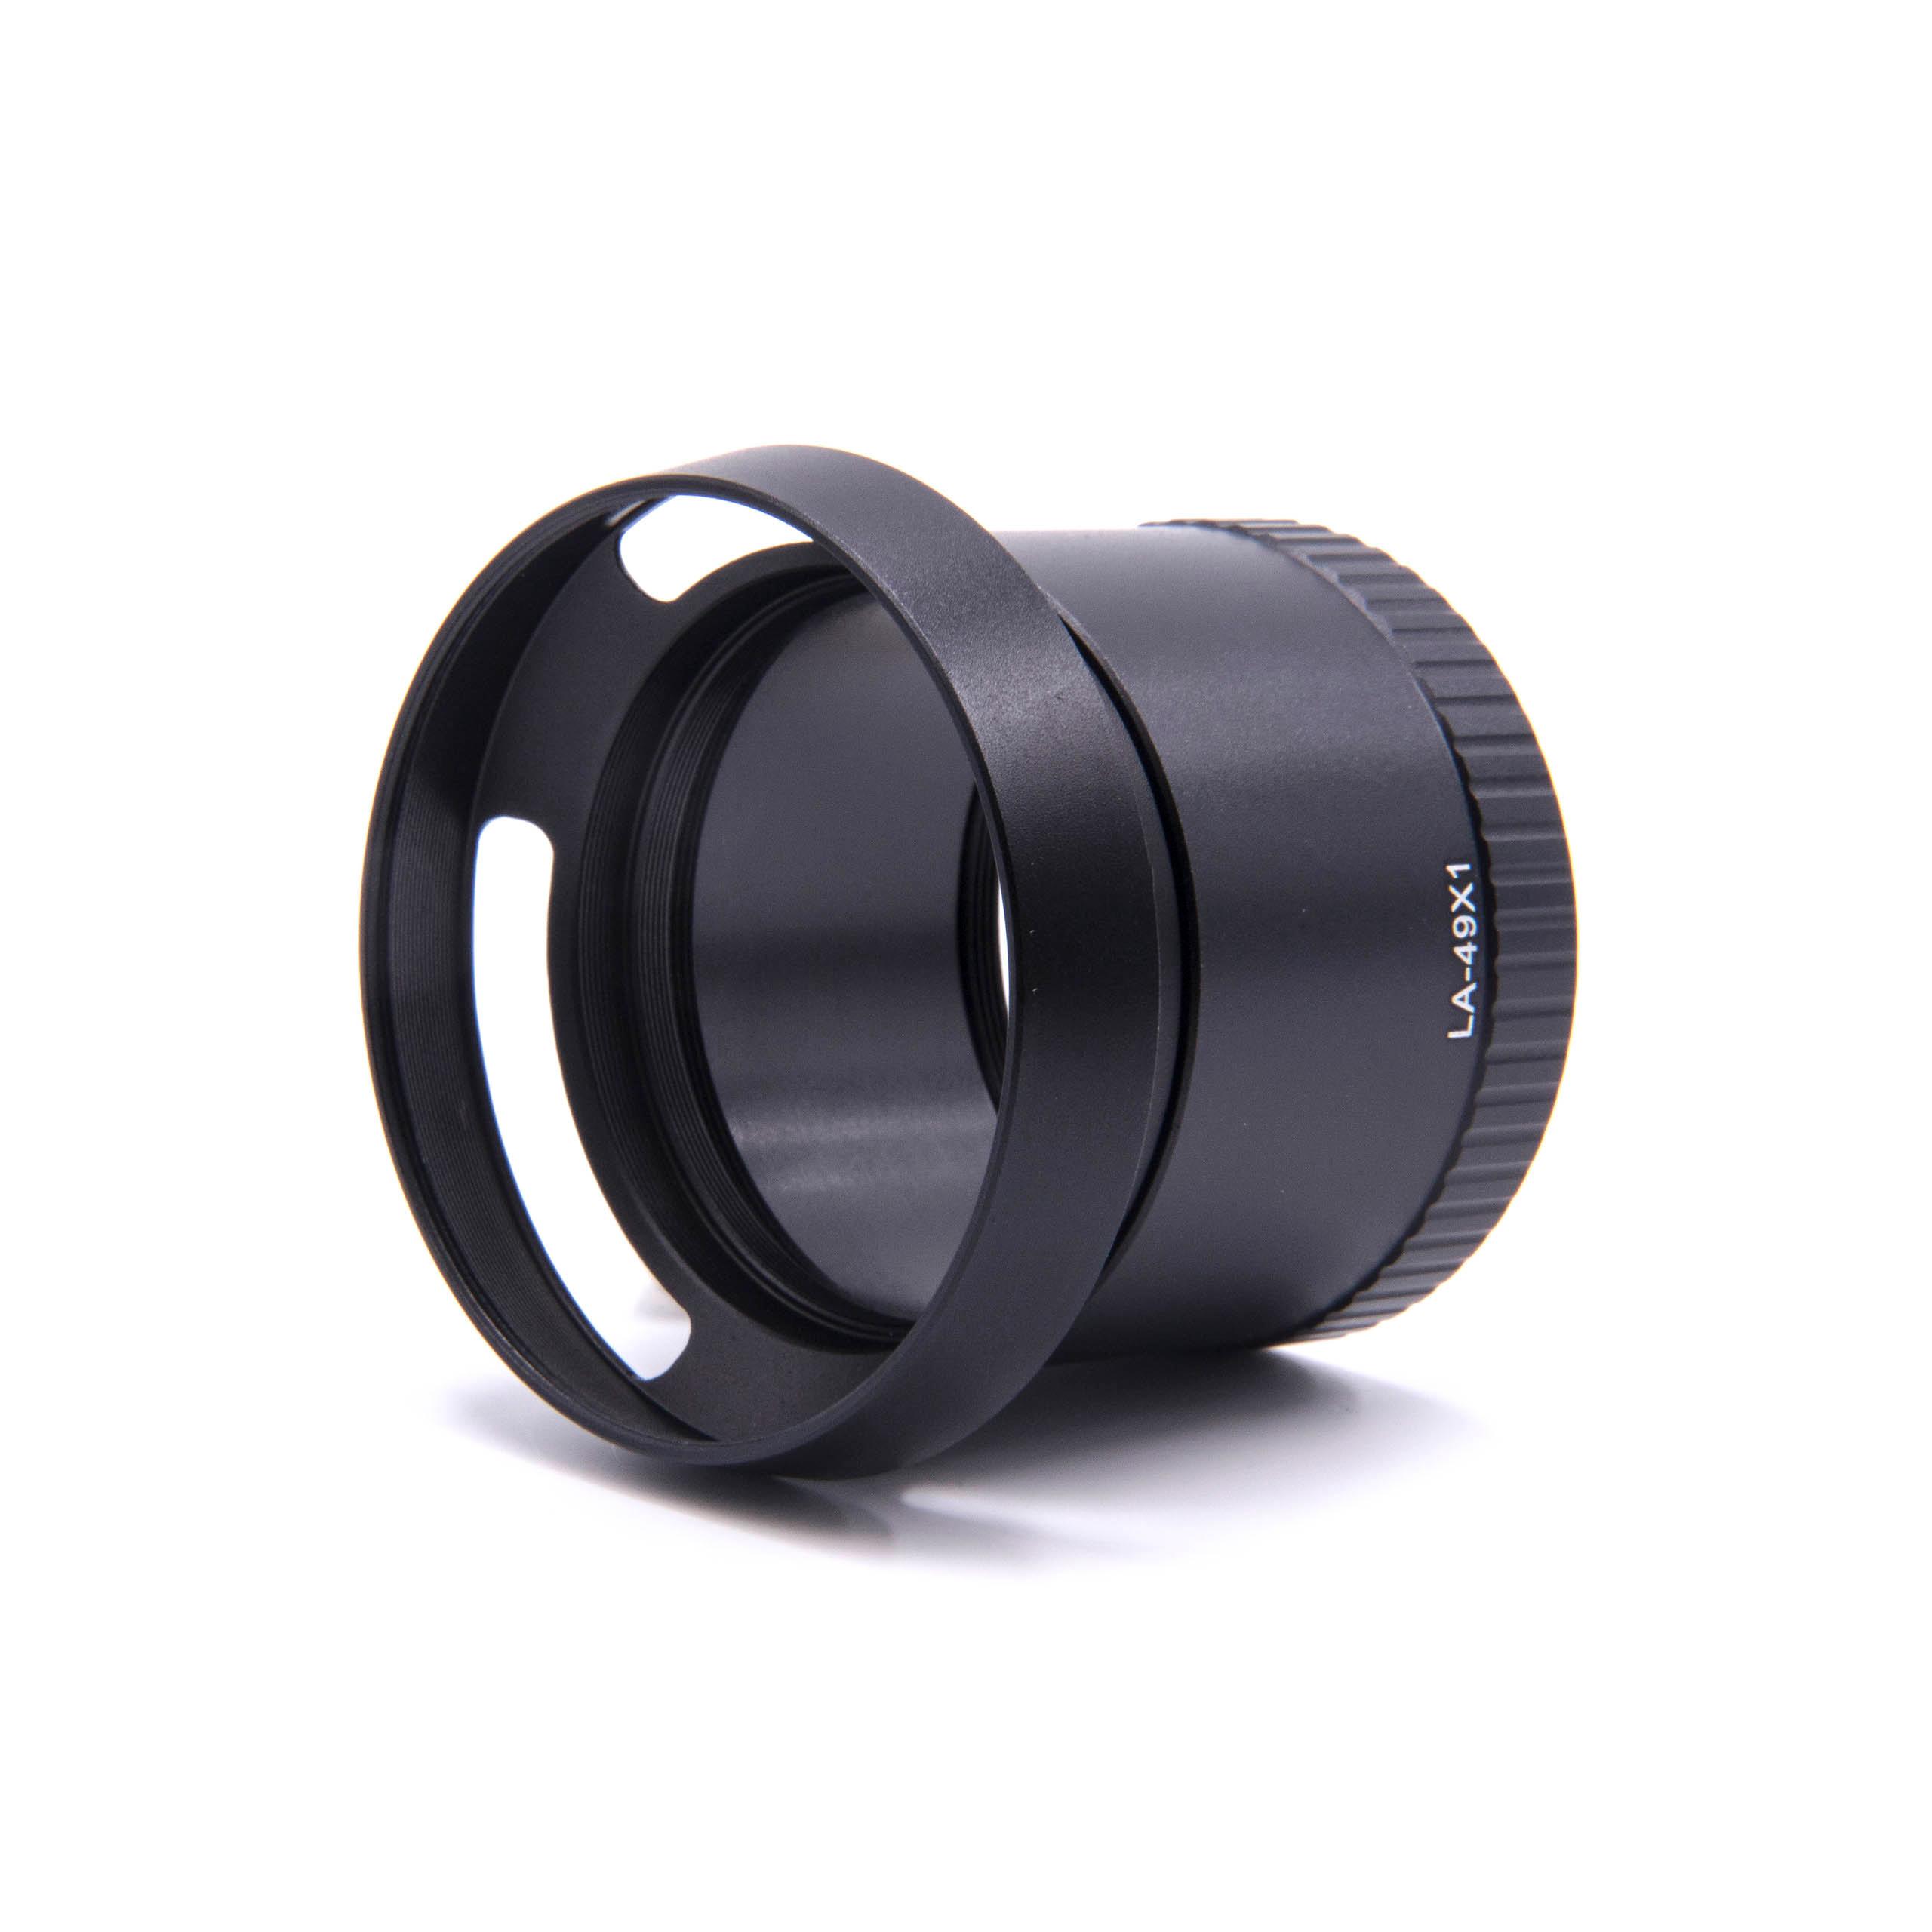 Adaptateur pour filtre 49 mm tubulaire pour objectif photo Leica X1, X2